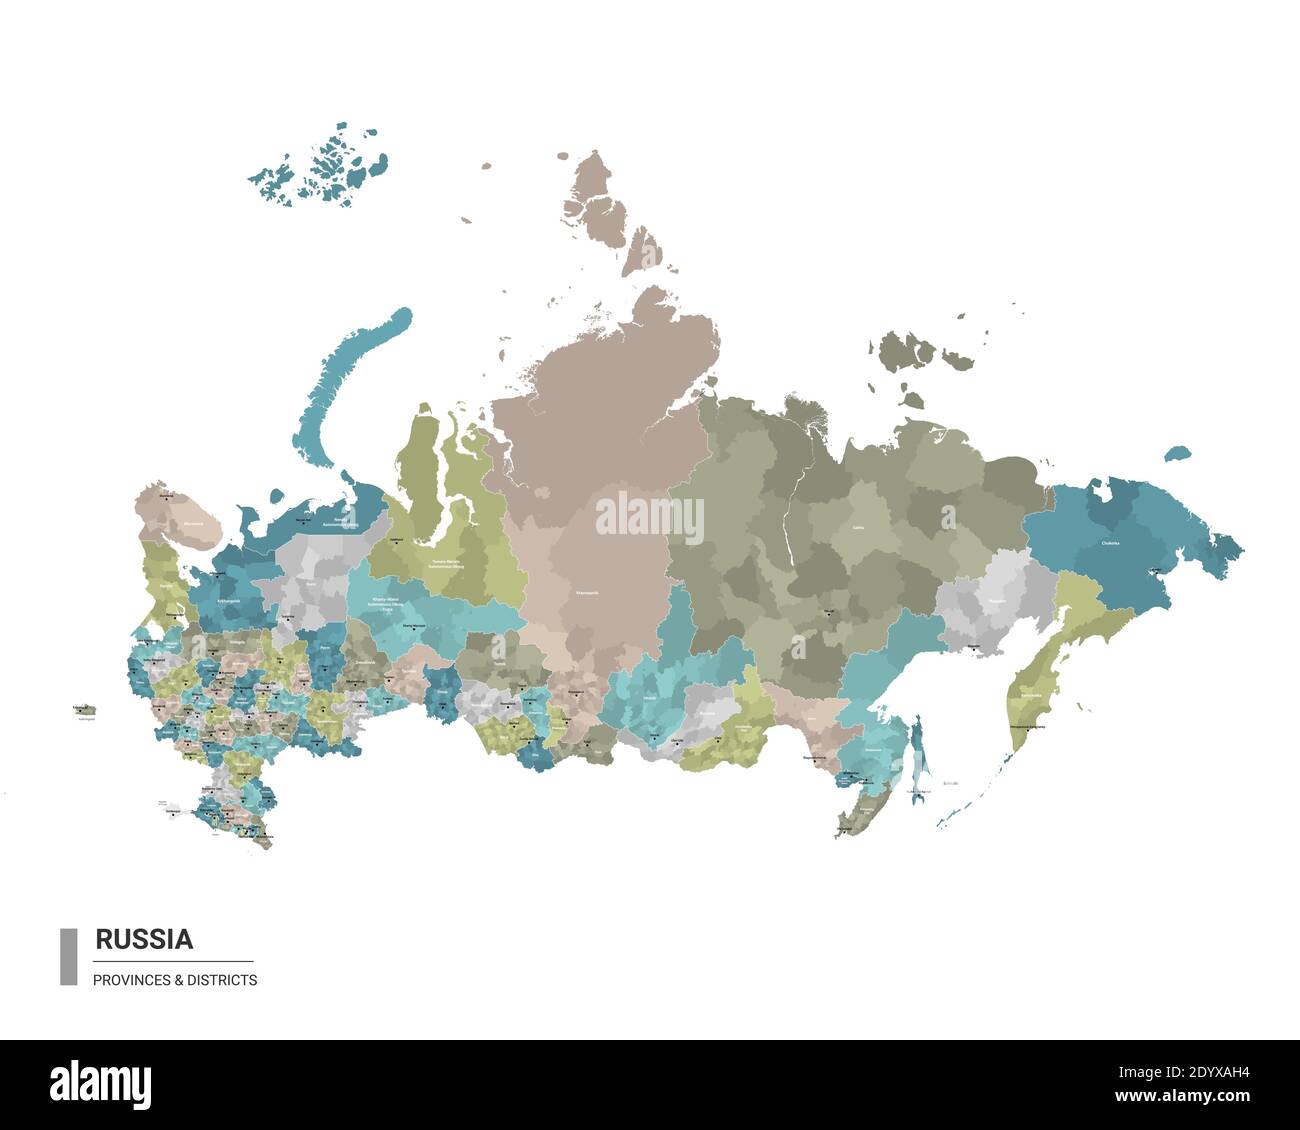 Carte détaillée du higt russe avec subdivisions. Carte administrative de la Russie avec le nom des districts et des villes, colorée par les États et le district administratif Illustration de Vecteur